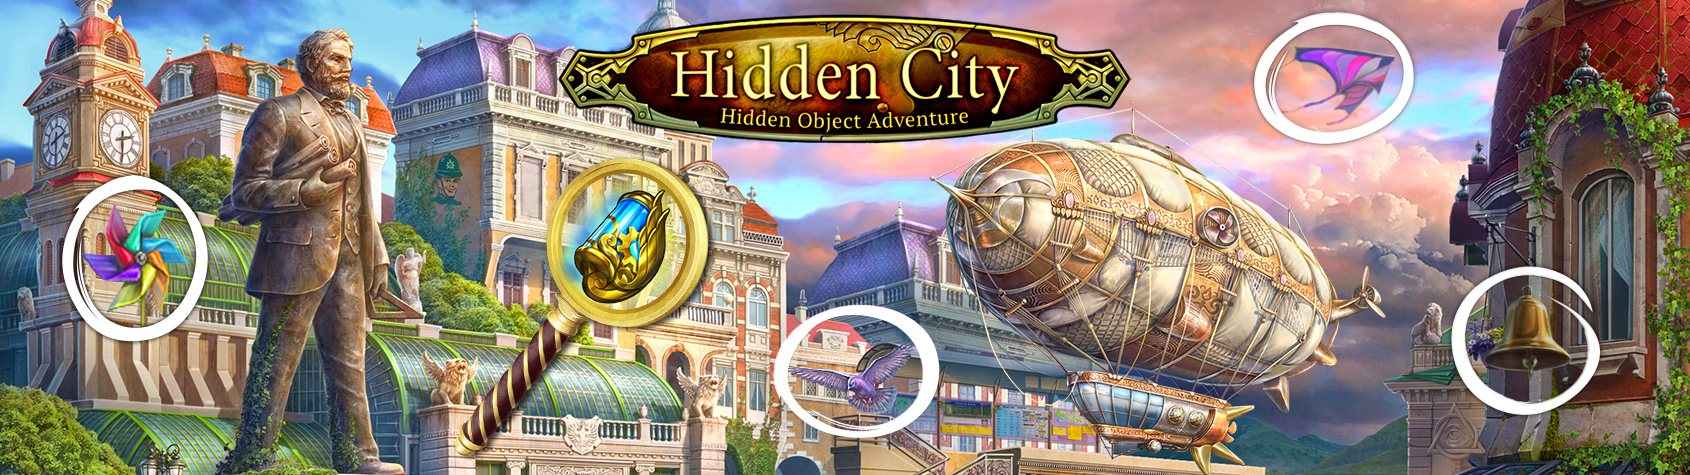 Hidden city hidden object adventure official logo